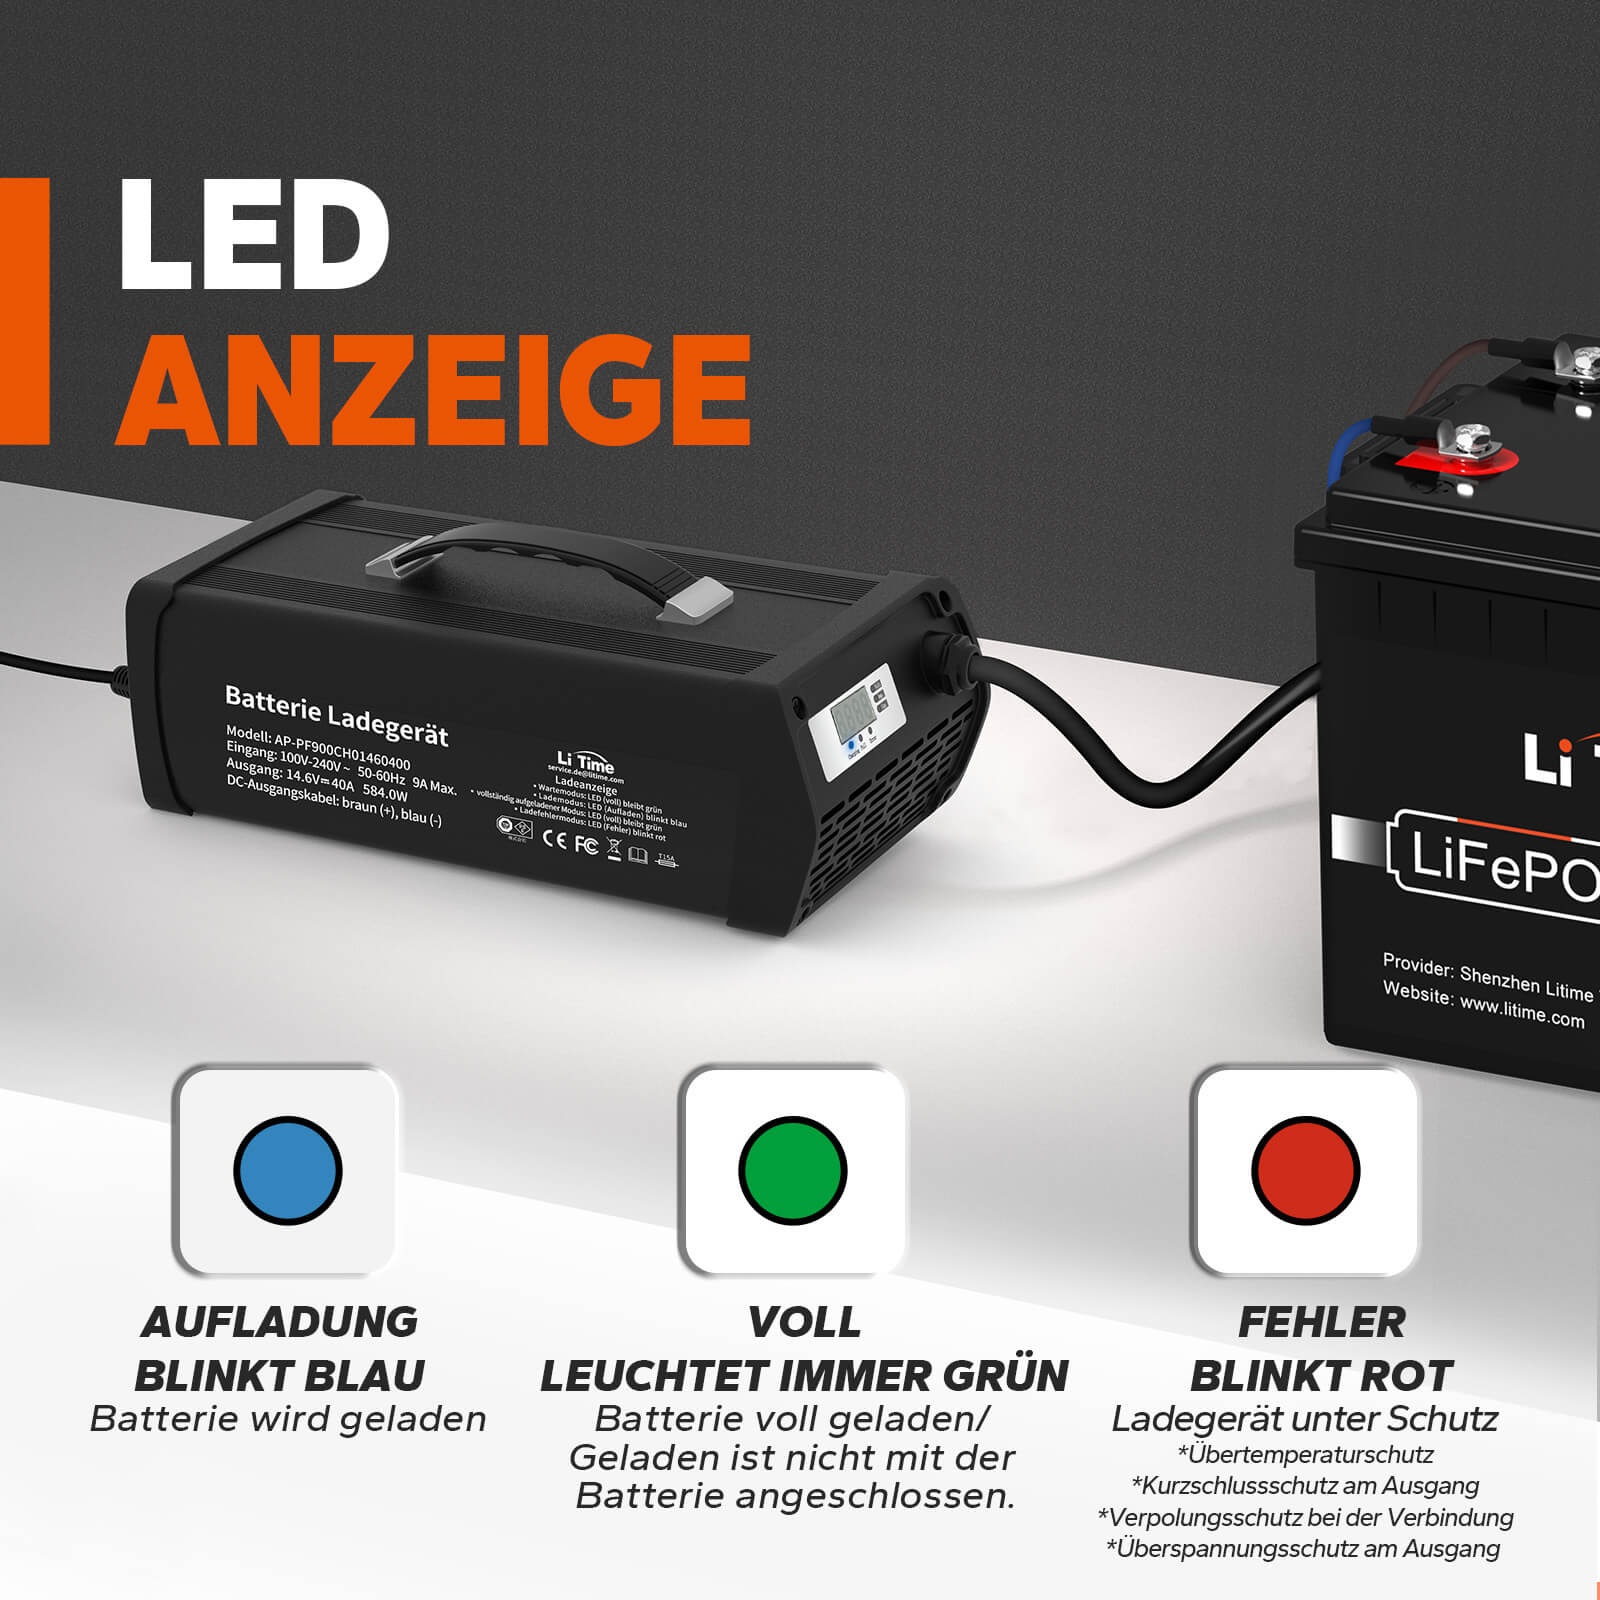 Chargeur de batterie lithium LiTime 14.6V 40A pour batterie lithium 12V LiFePO4